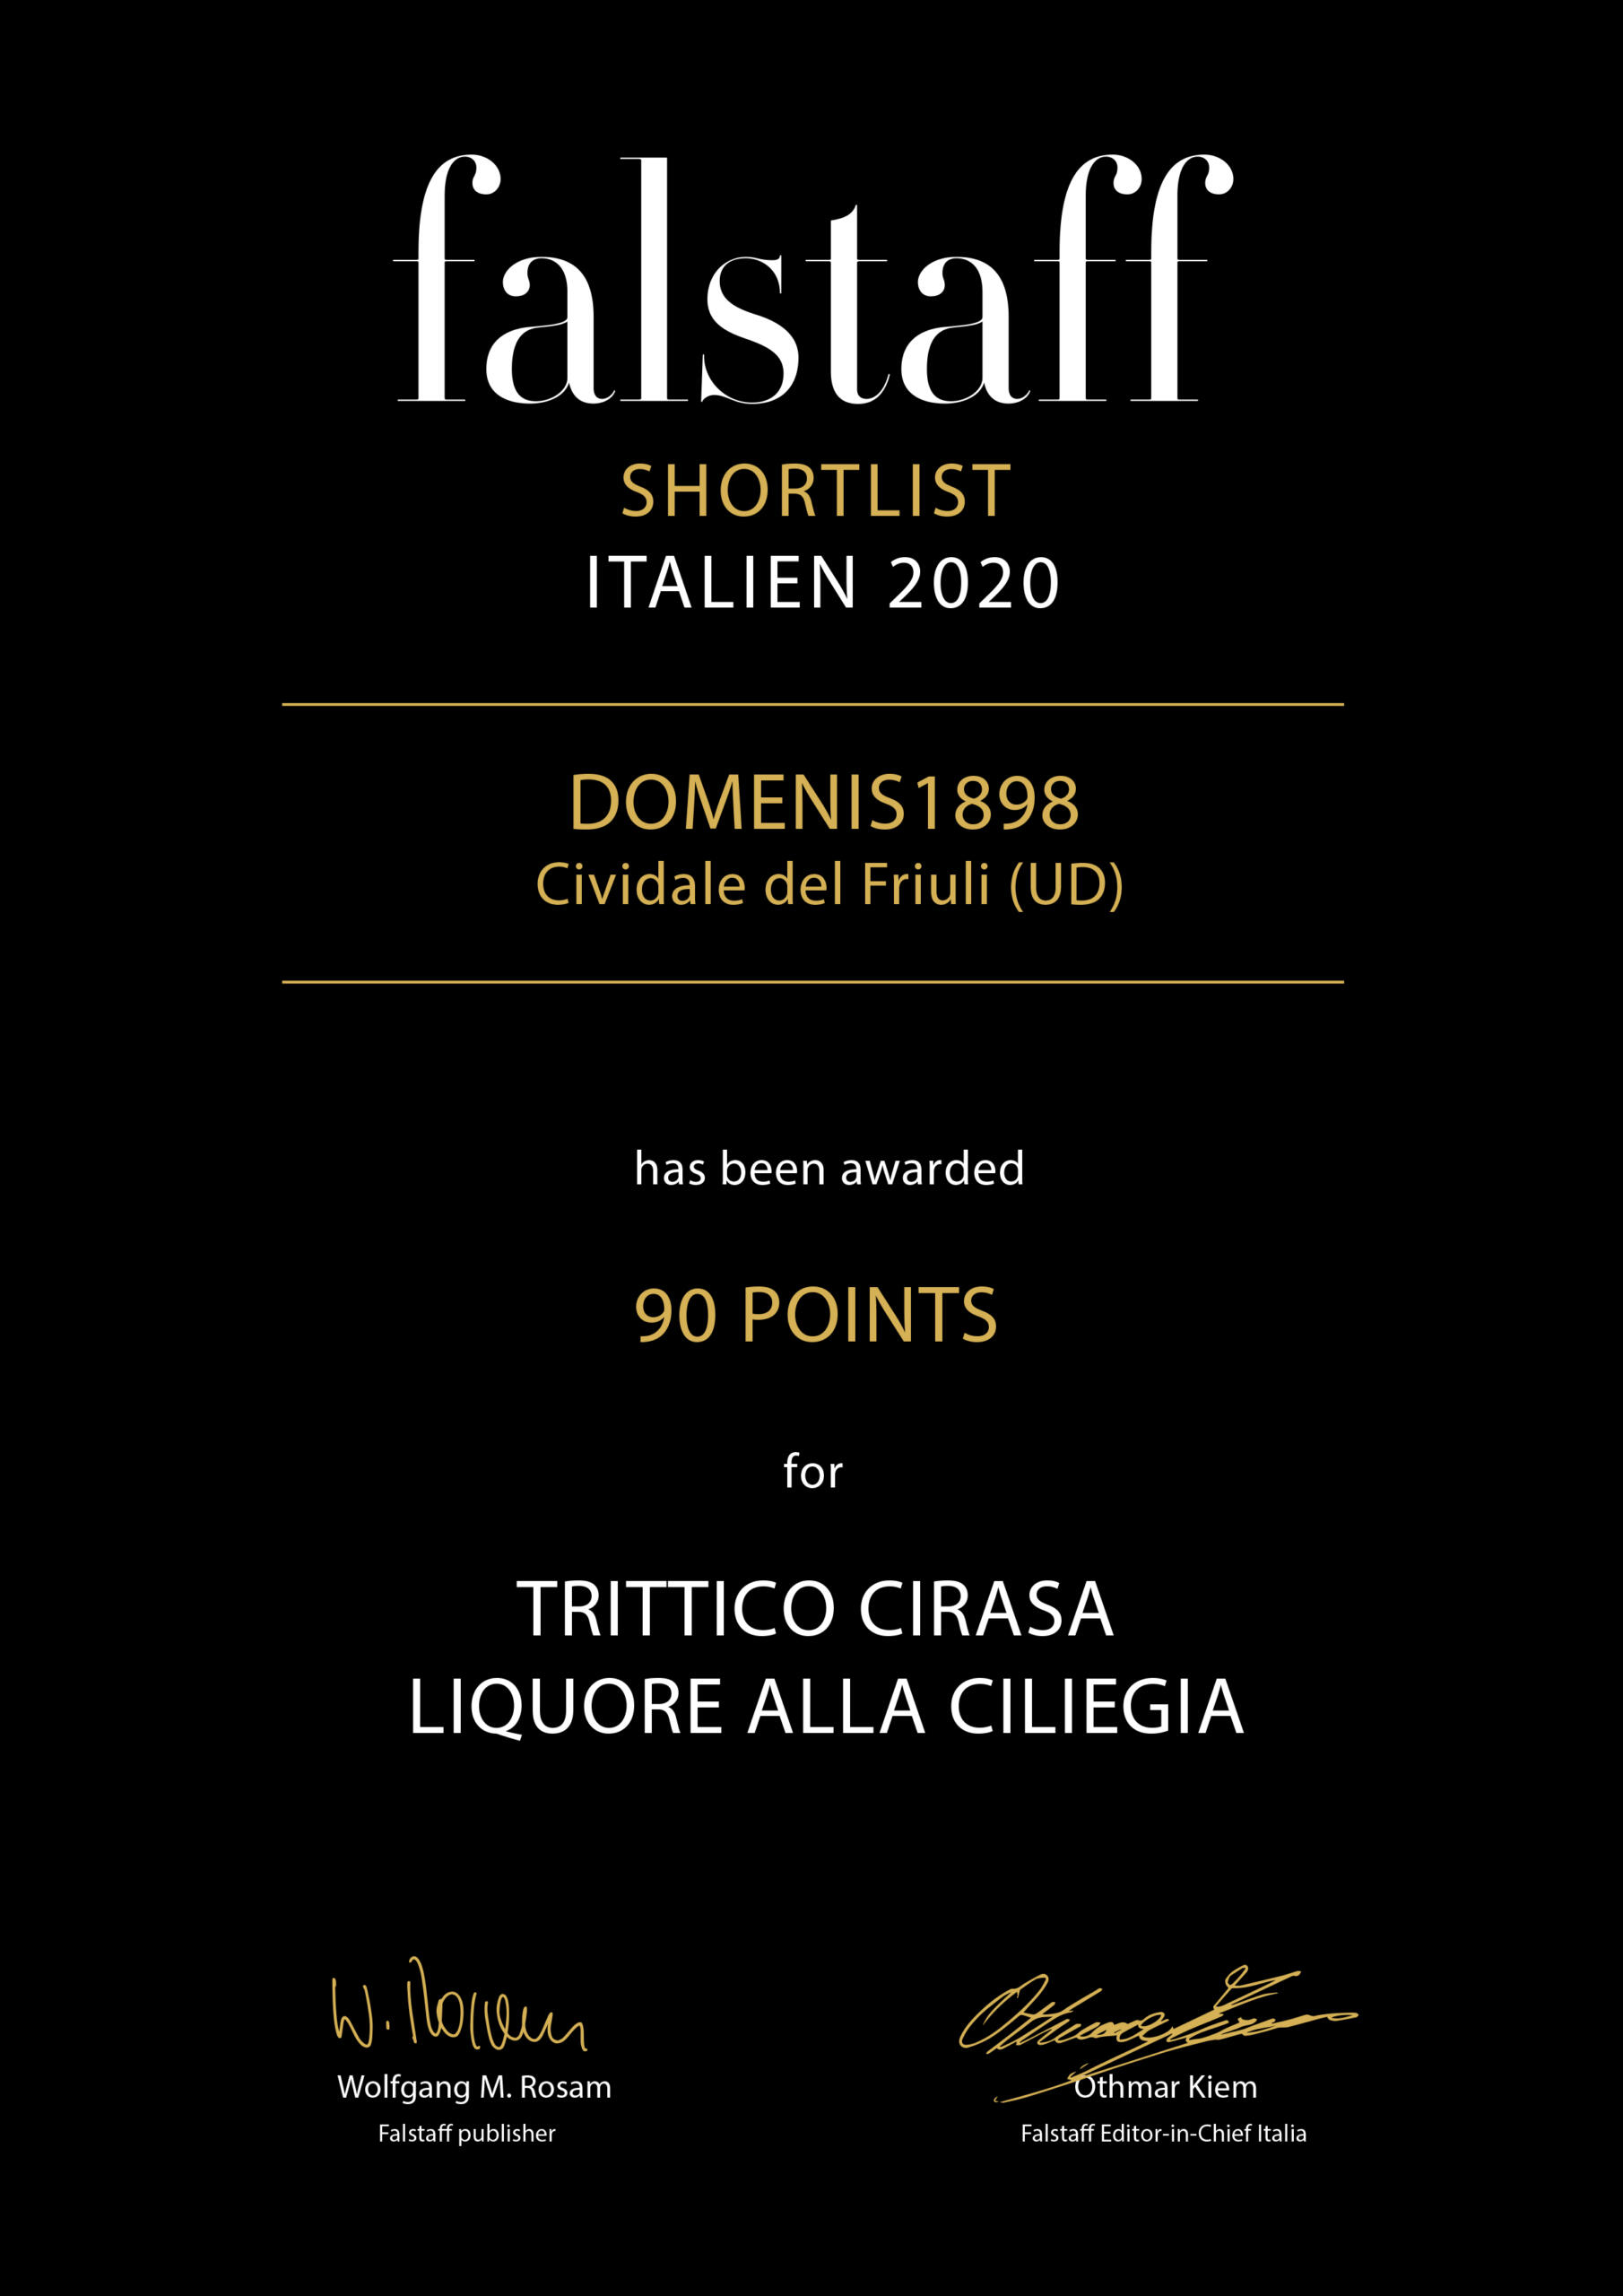 Falstaff Shortlist Italien 2020 – Trittico Cirasa